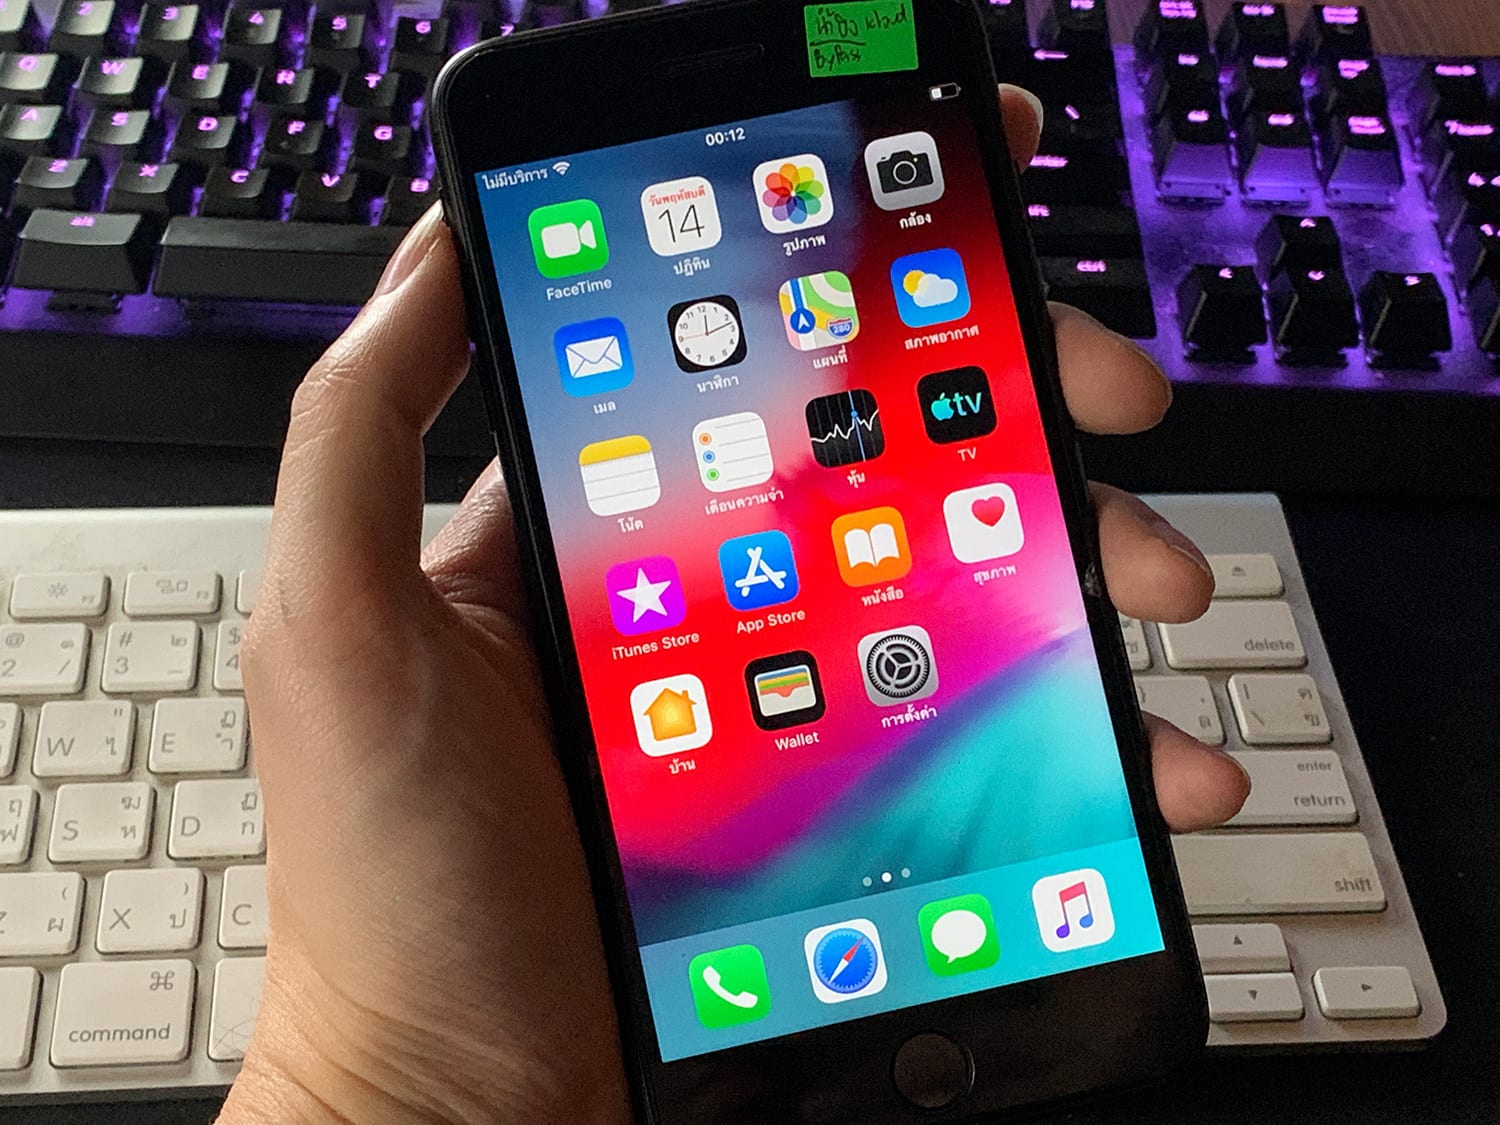 แจกฟรีวิธีปลดล็อค iCloud iPhone ปี 2019 ด้วยการBypass 2